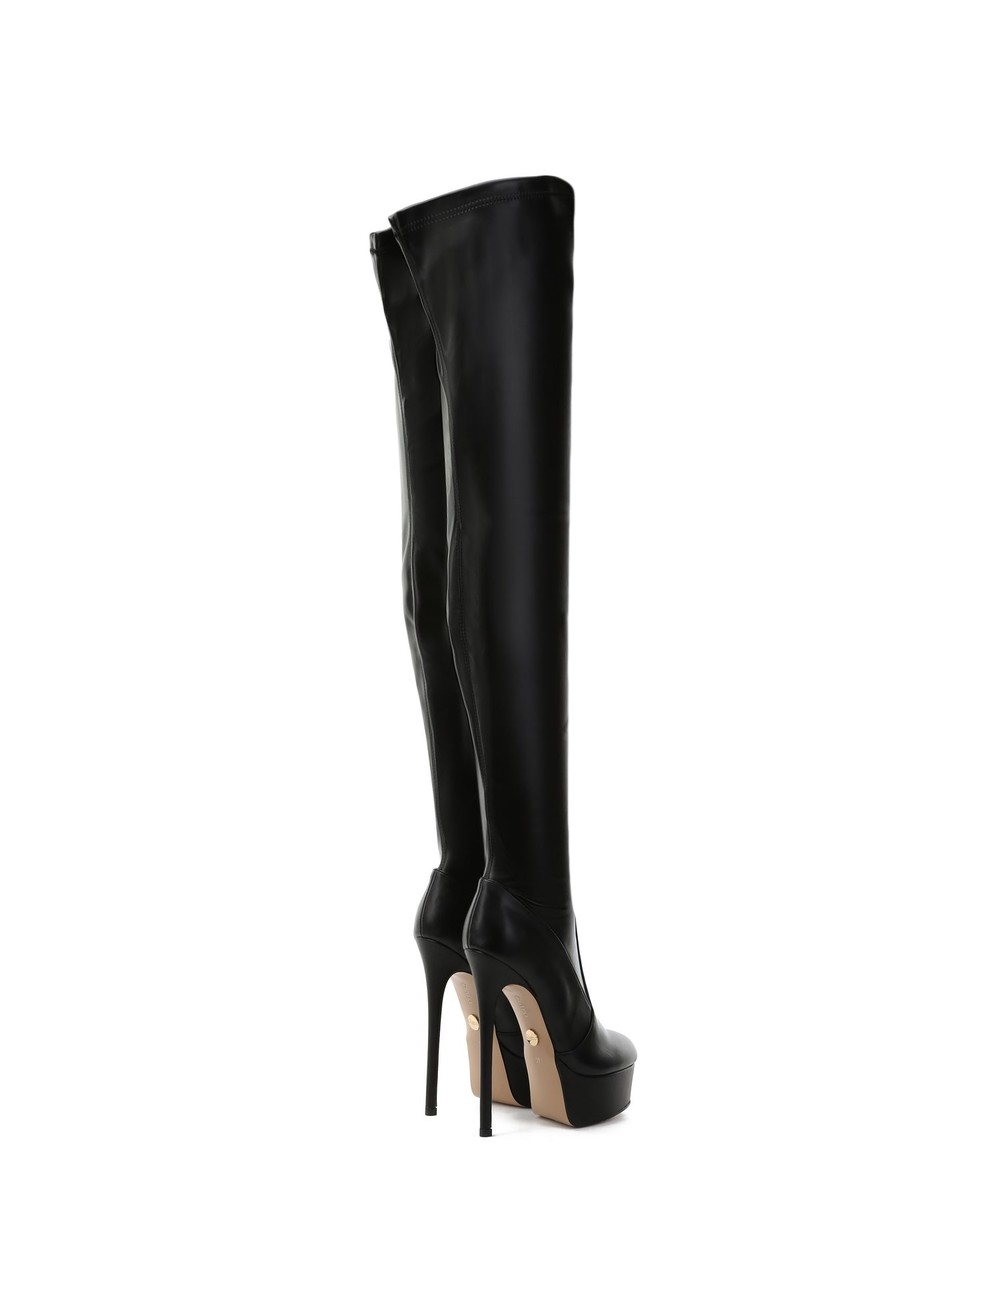 Giaro SUTTON BLACK MATTE - Shoebidoo Shoes | Giaro high heels